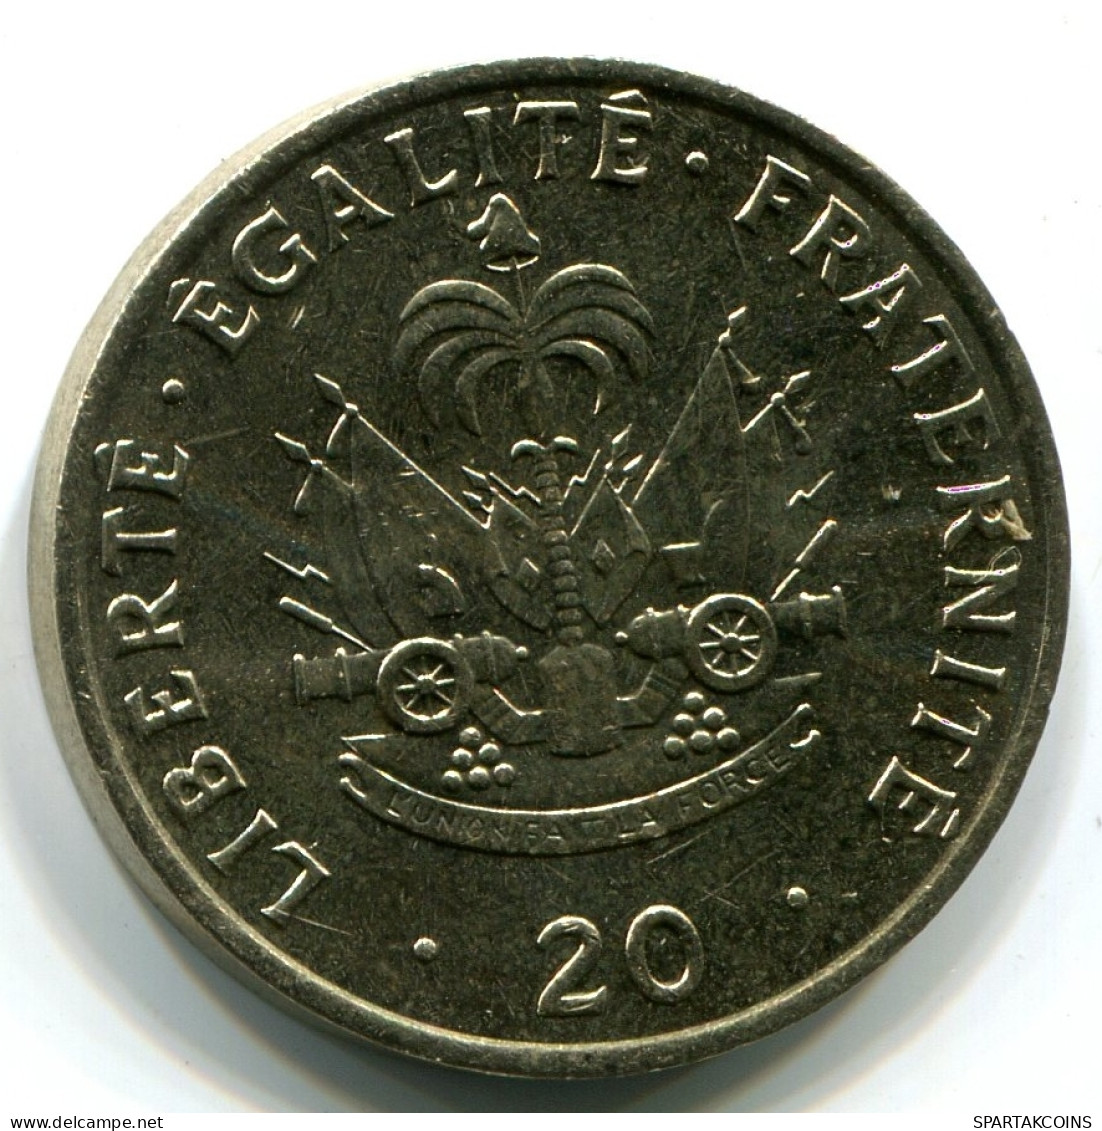 20 CENTIMES 1991 HAITI UNC Coin #W11005.U - Haiti